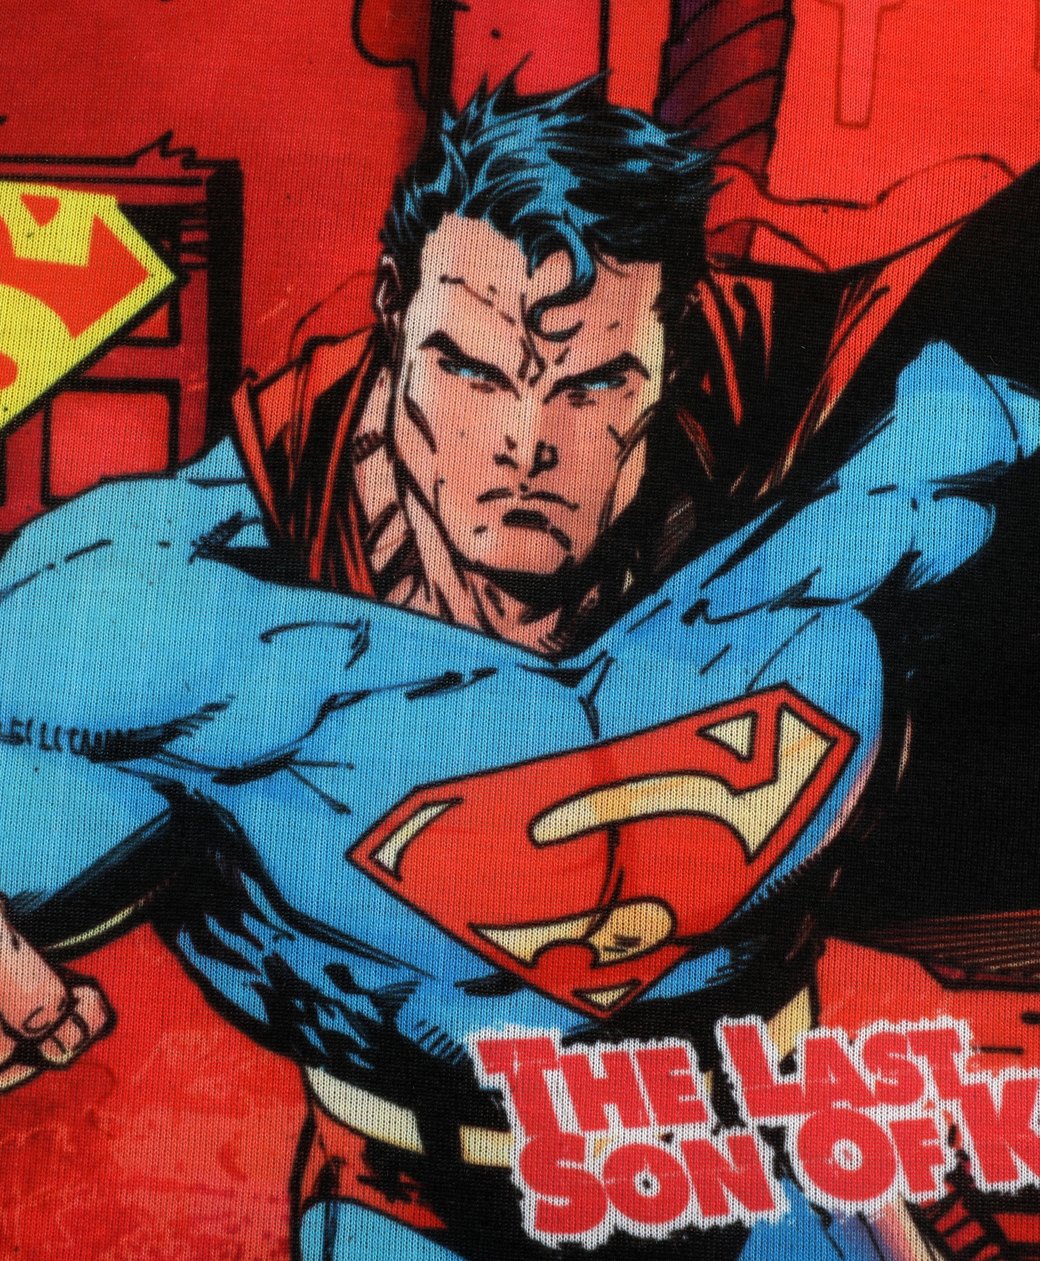 Superman last son of krypton